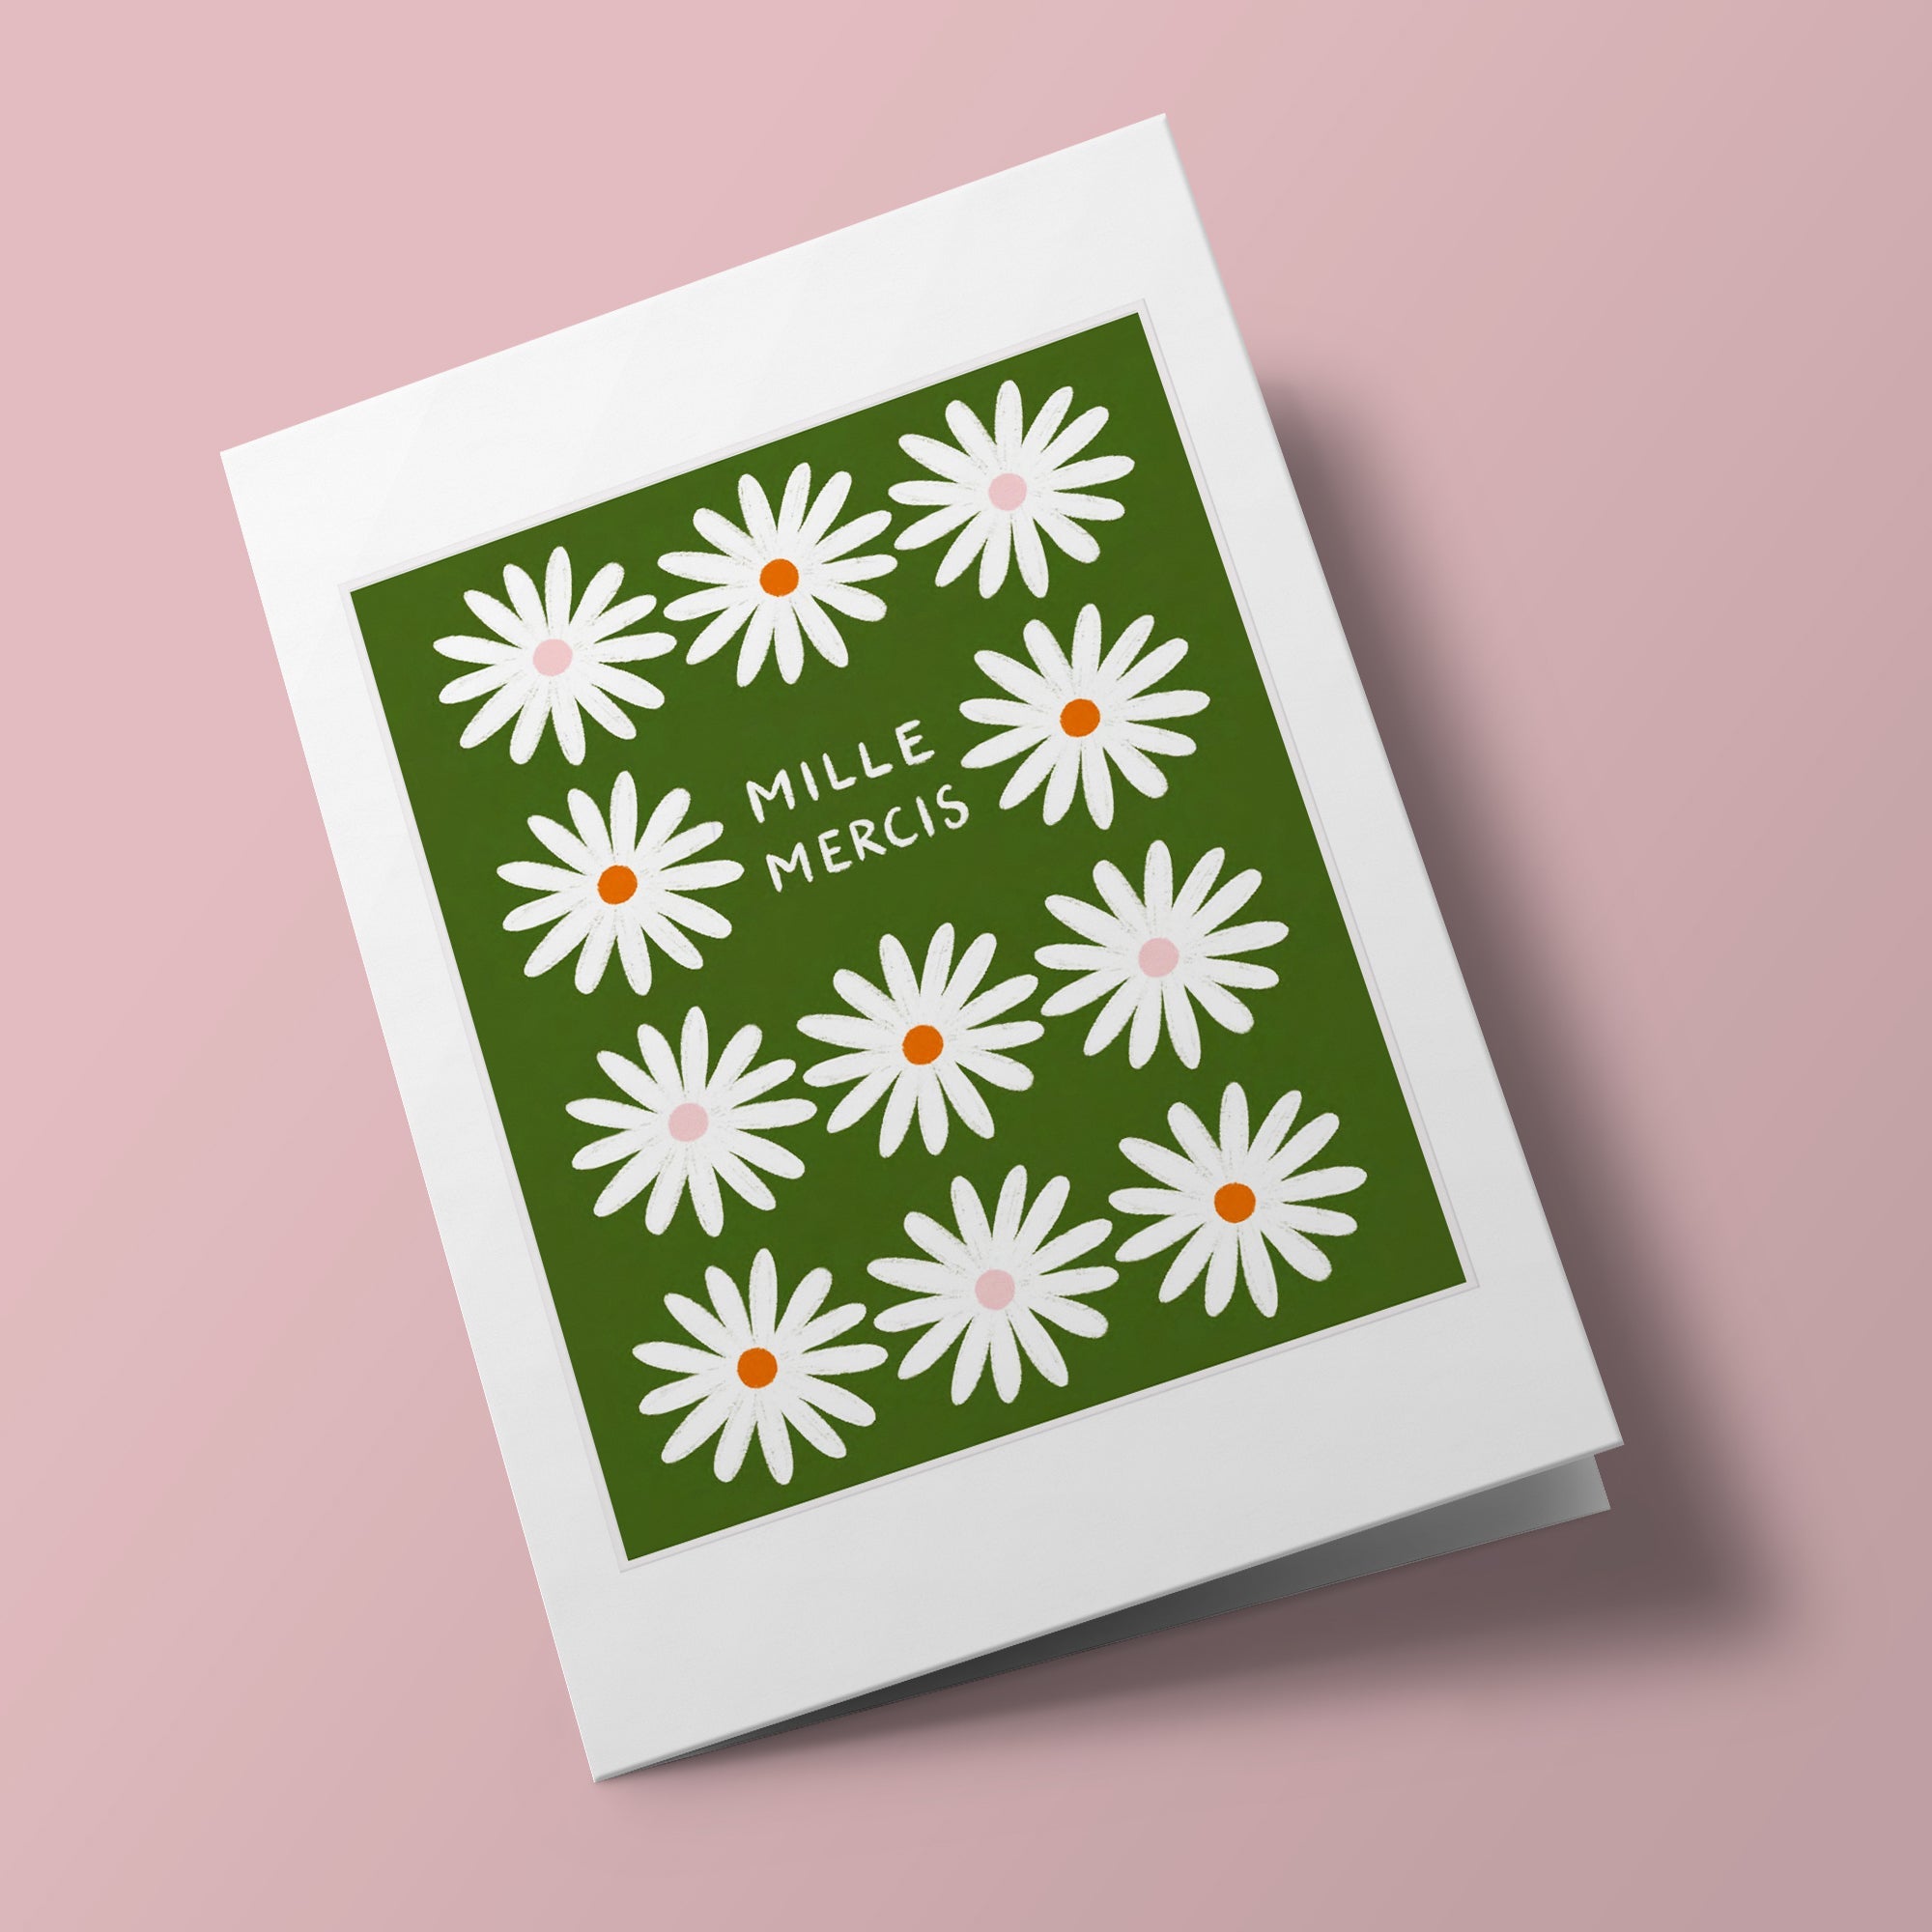 Joie de vivre - "Mille mercis", fleurs blanc sur fond vert